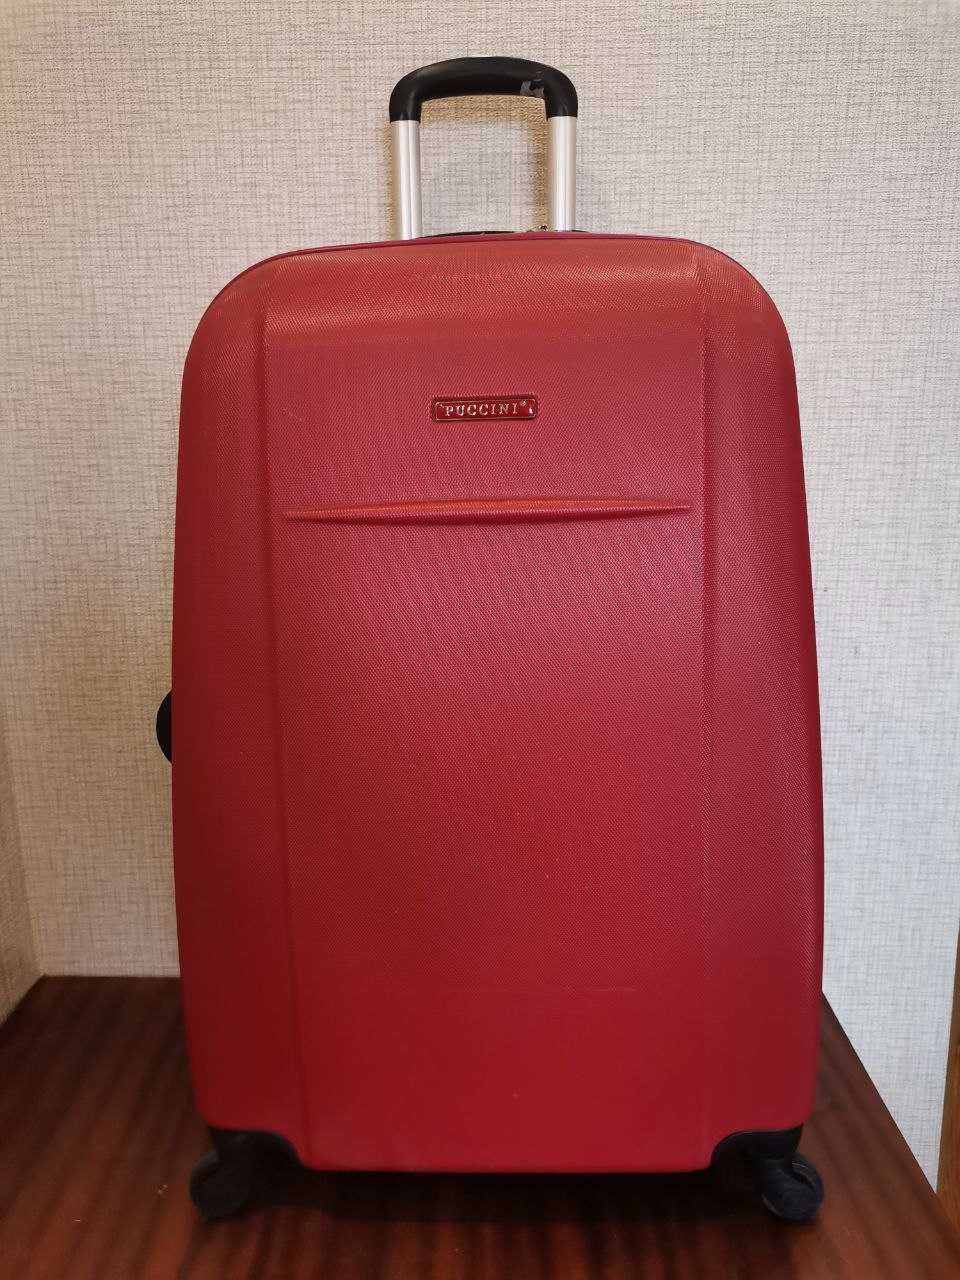 Puccini 75 см валіза велика чемодан большой купить в Украине